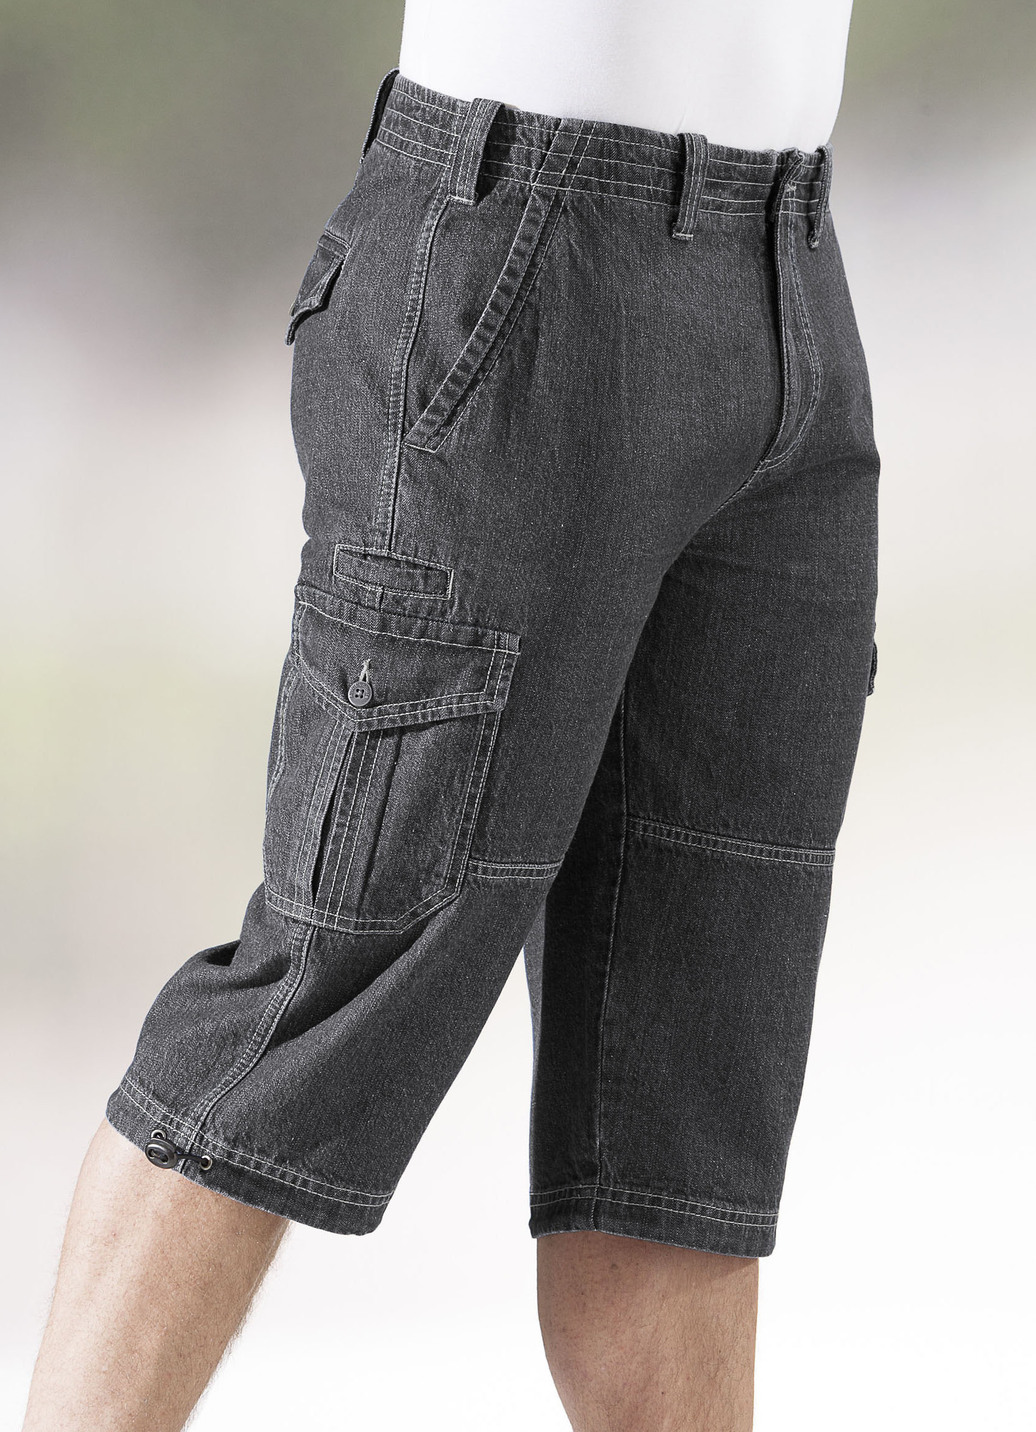 Jeans-Bermudas mit Cargotaschen in 3 Farben, Anthrazit, Größe 27 von BADER